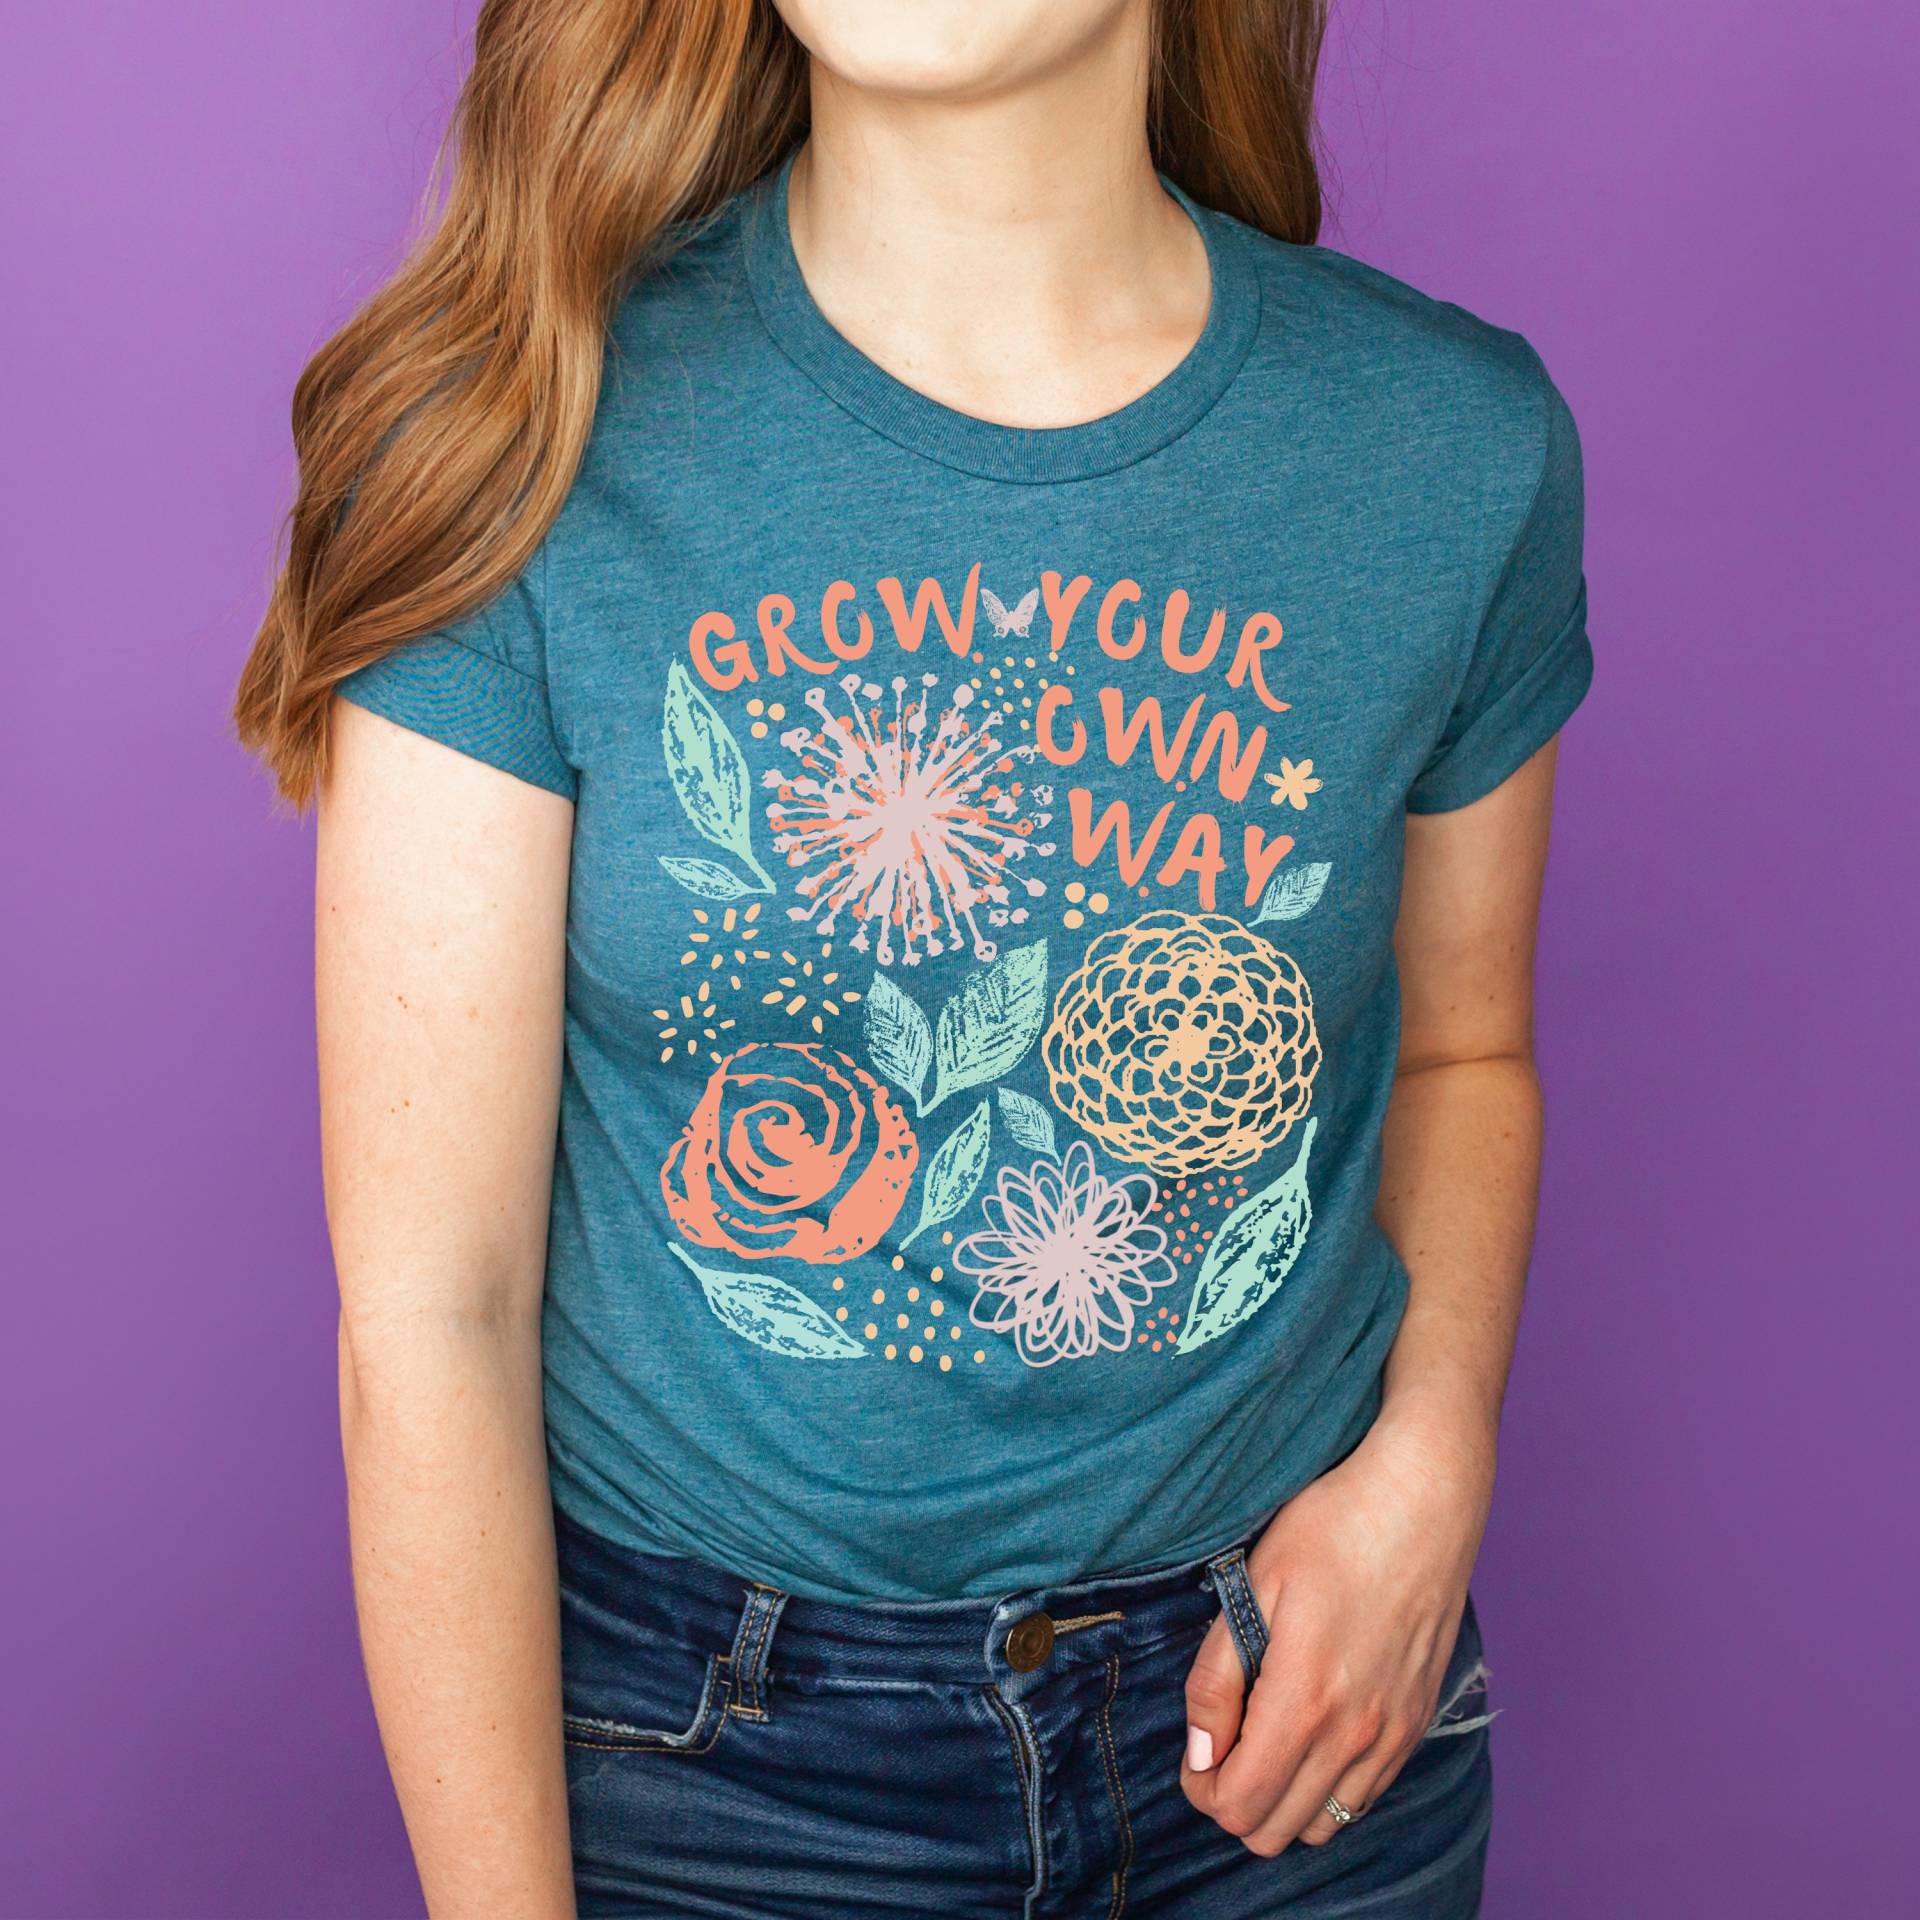 Inspirierende T-Shirts Für Frauen, Selbstwachstums-Shirt, Motivierendes Spruch-T-Shirt, Positives Zitat-T-Shirt, Blumen-T-Shirt, Süßes von IntoThePinesDesign